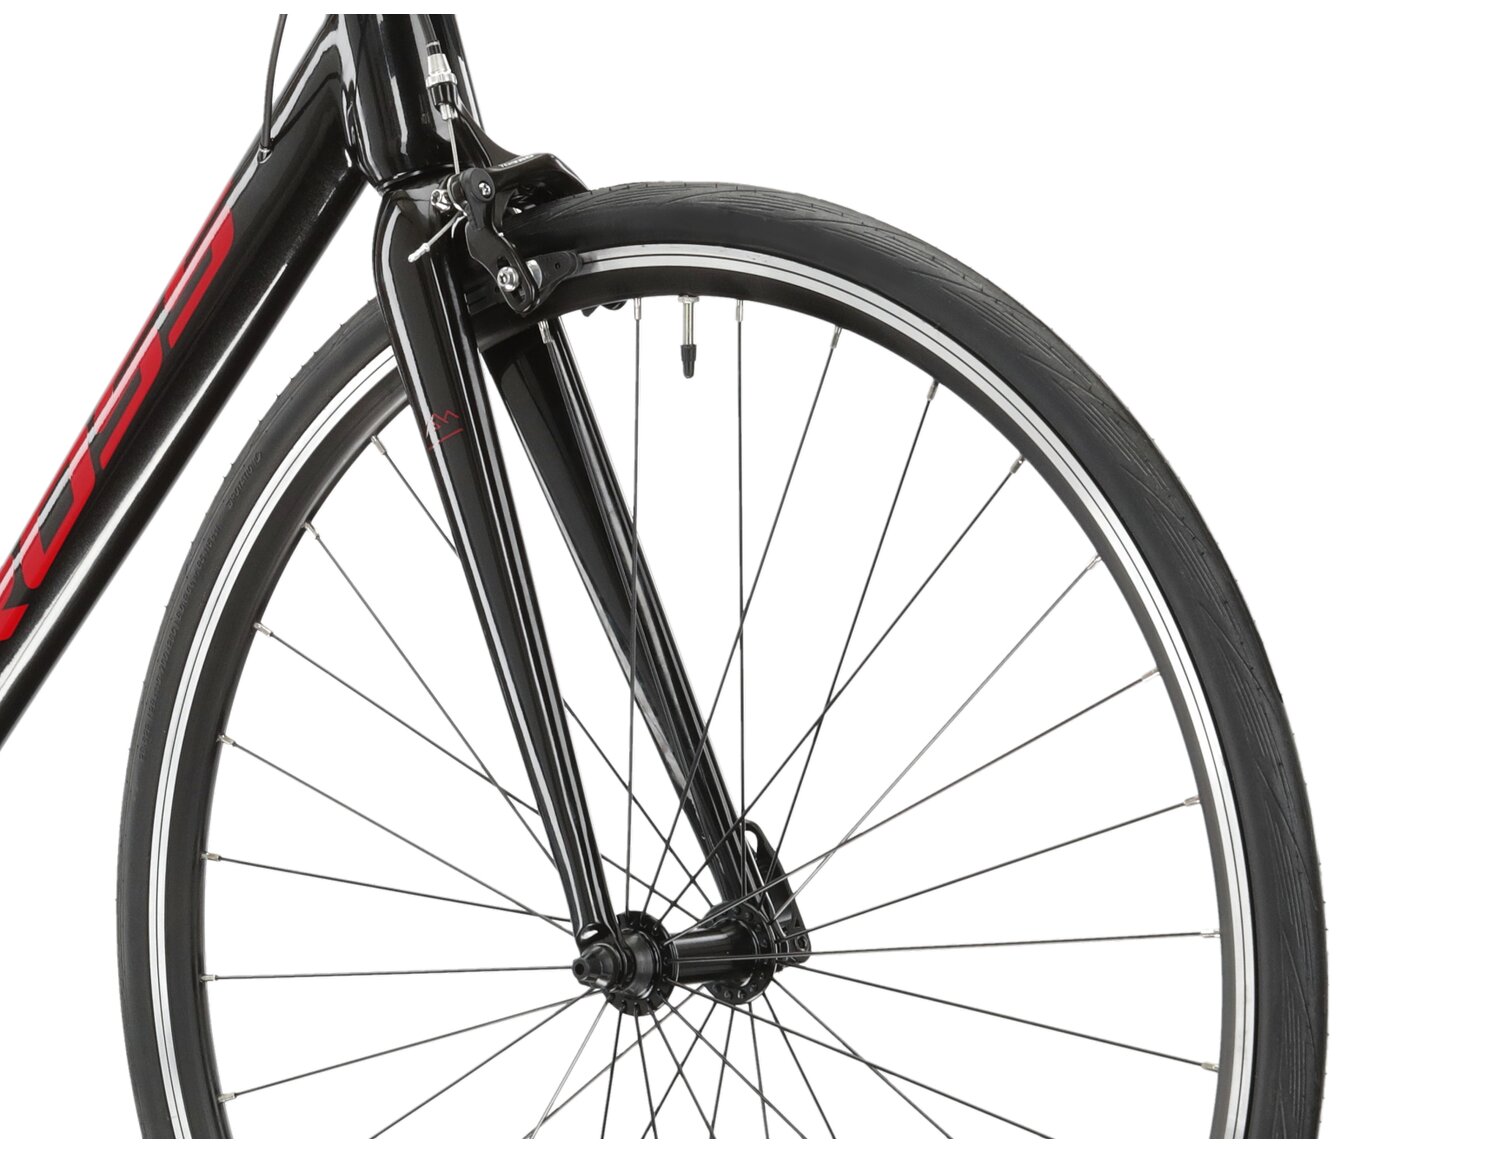  Aluminiowa rama, sztywny carbonowy widelec oraz opony Wanda w rowerze szosowym KROSS Vento 2.0 KRX 